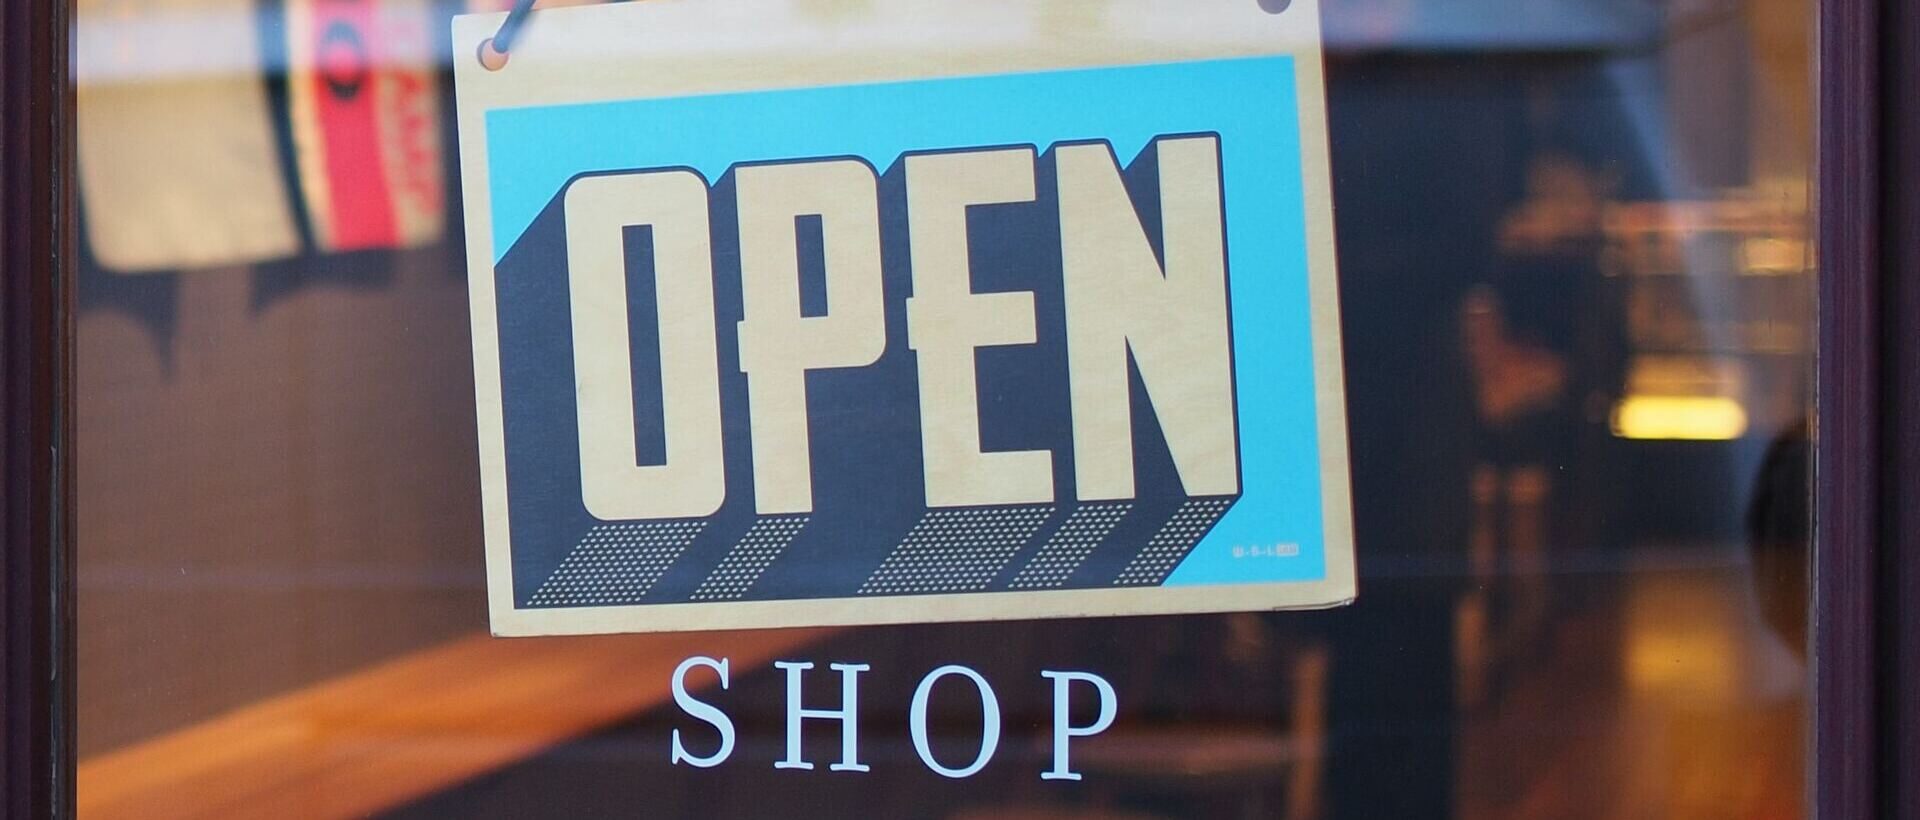 Ein Schild mit der Aufschrift "OPEN SHOP" hängt an einer gläsernen Ladentür